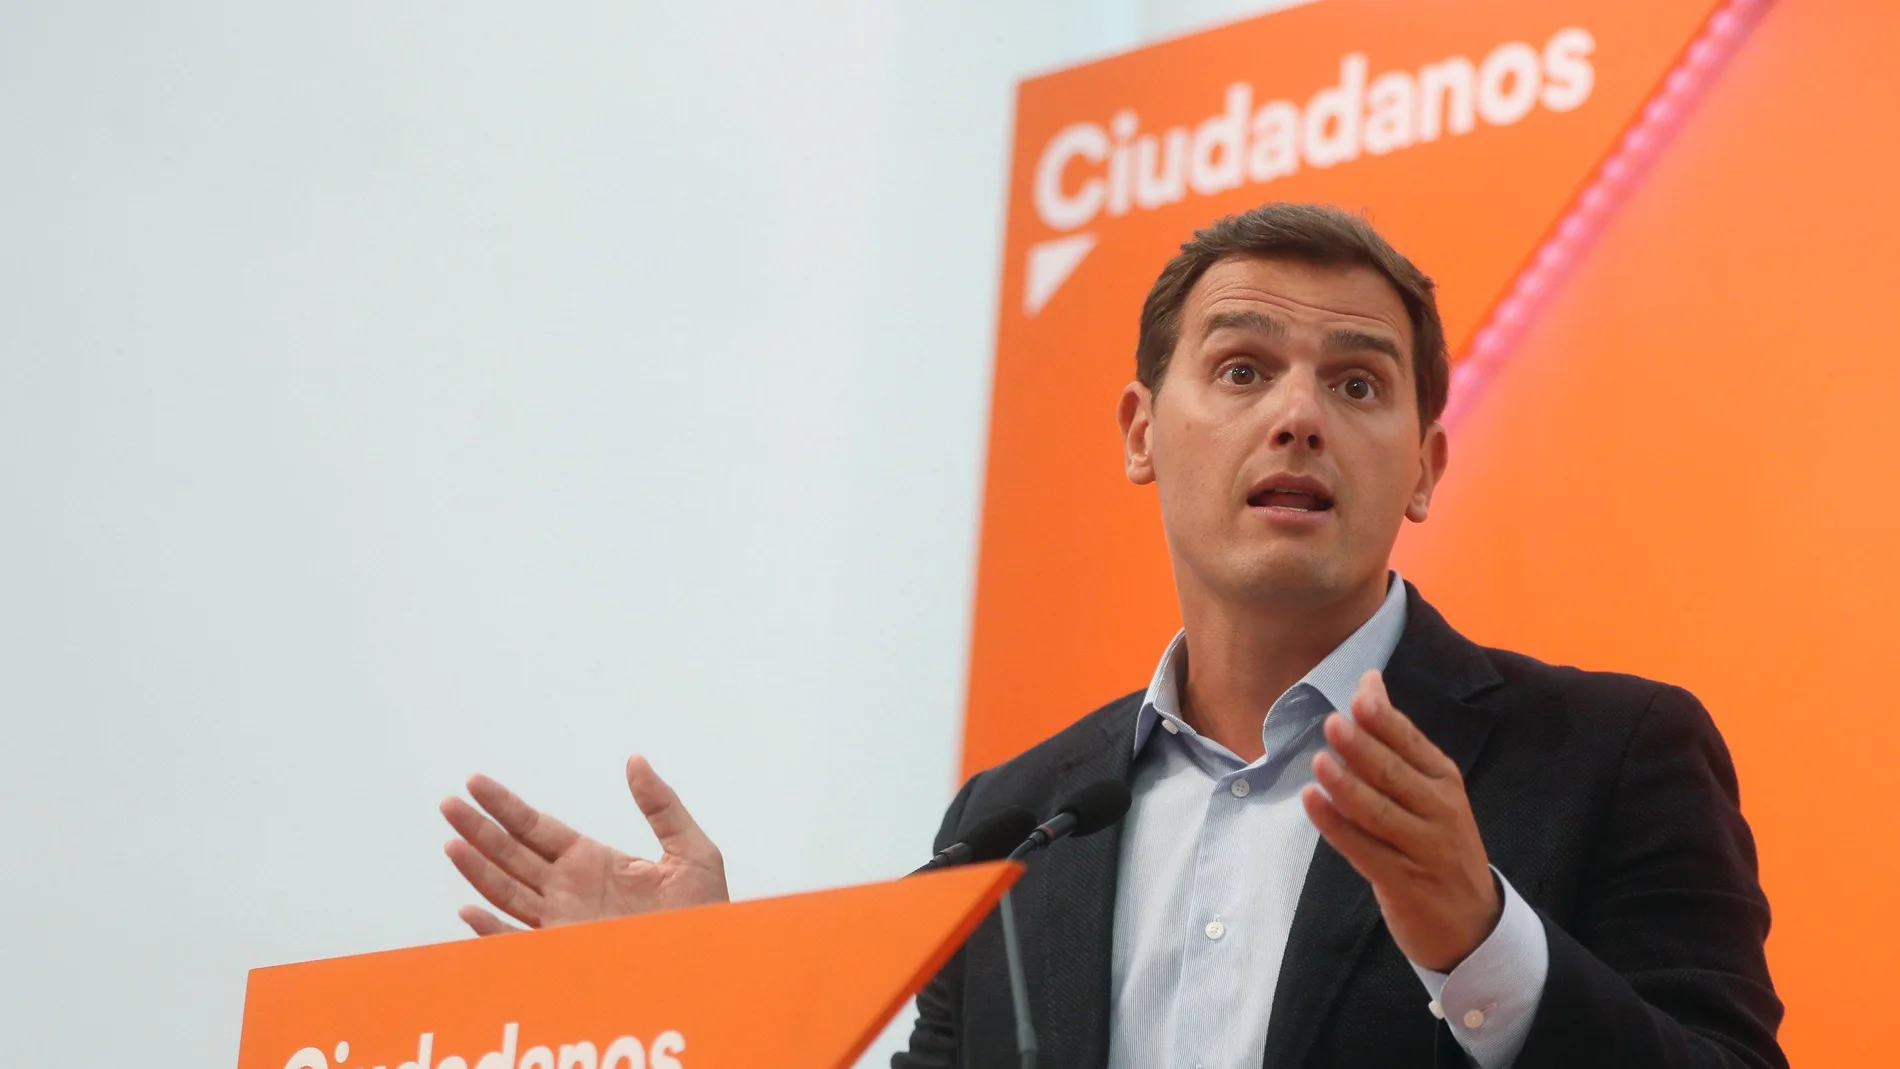 El líder de Ciudadanos, Albert Rivera, en la sede central de la formación naranja, en Madrid